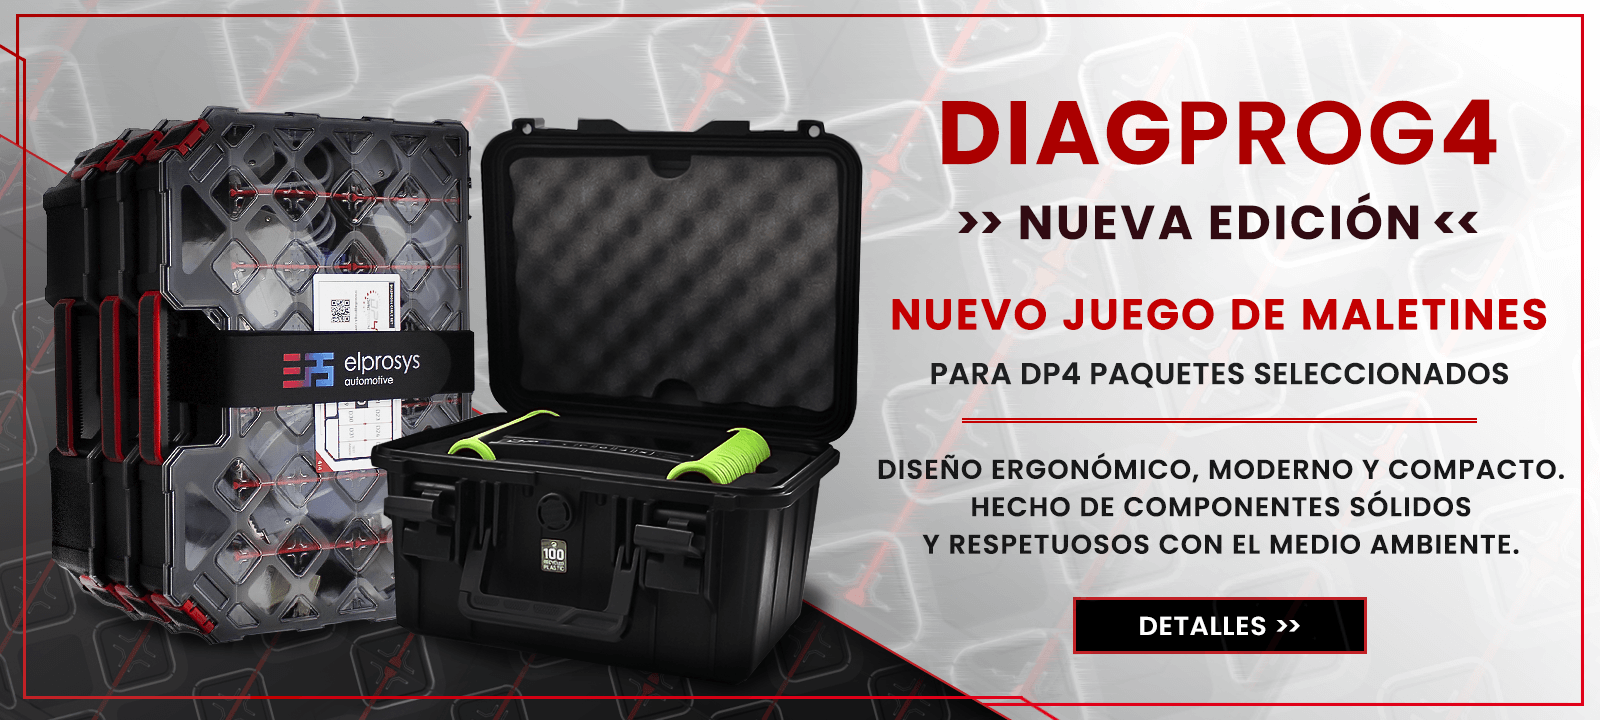 Diagprog4 - nuevo juego de maletas de transporte